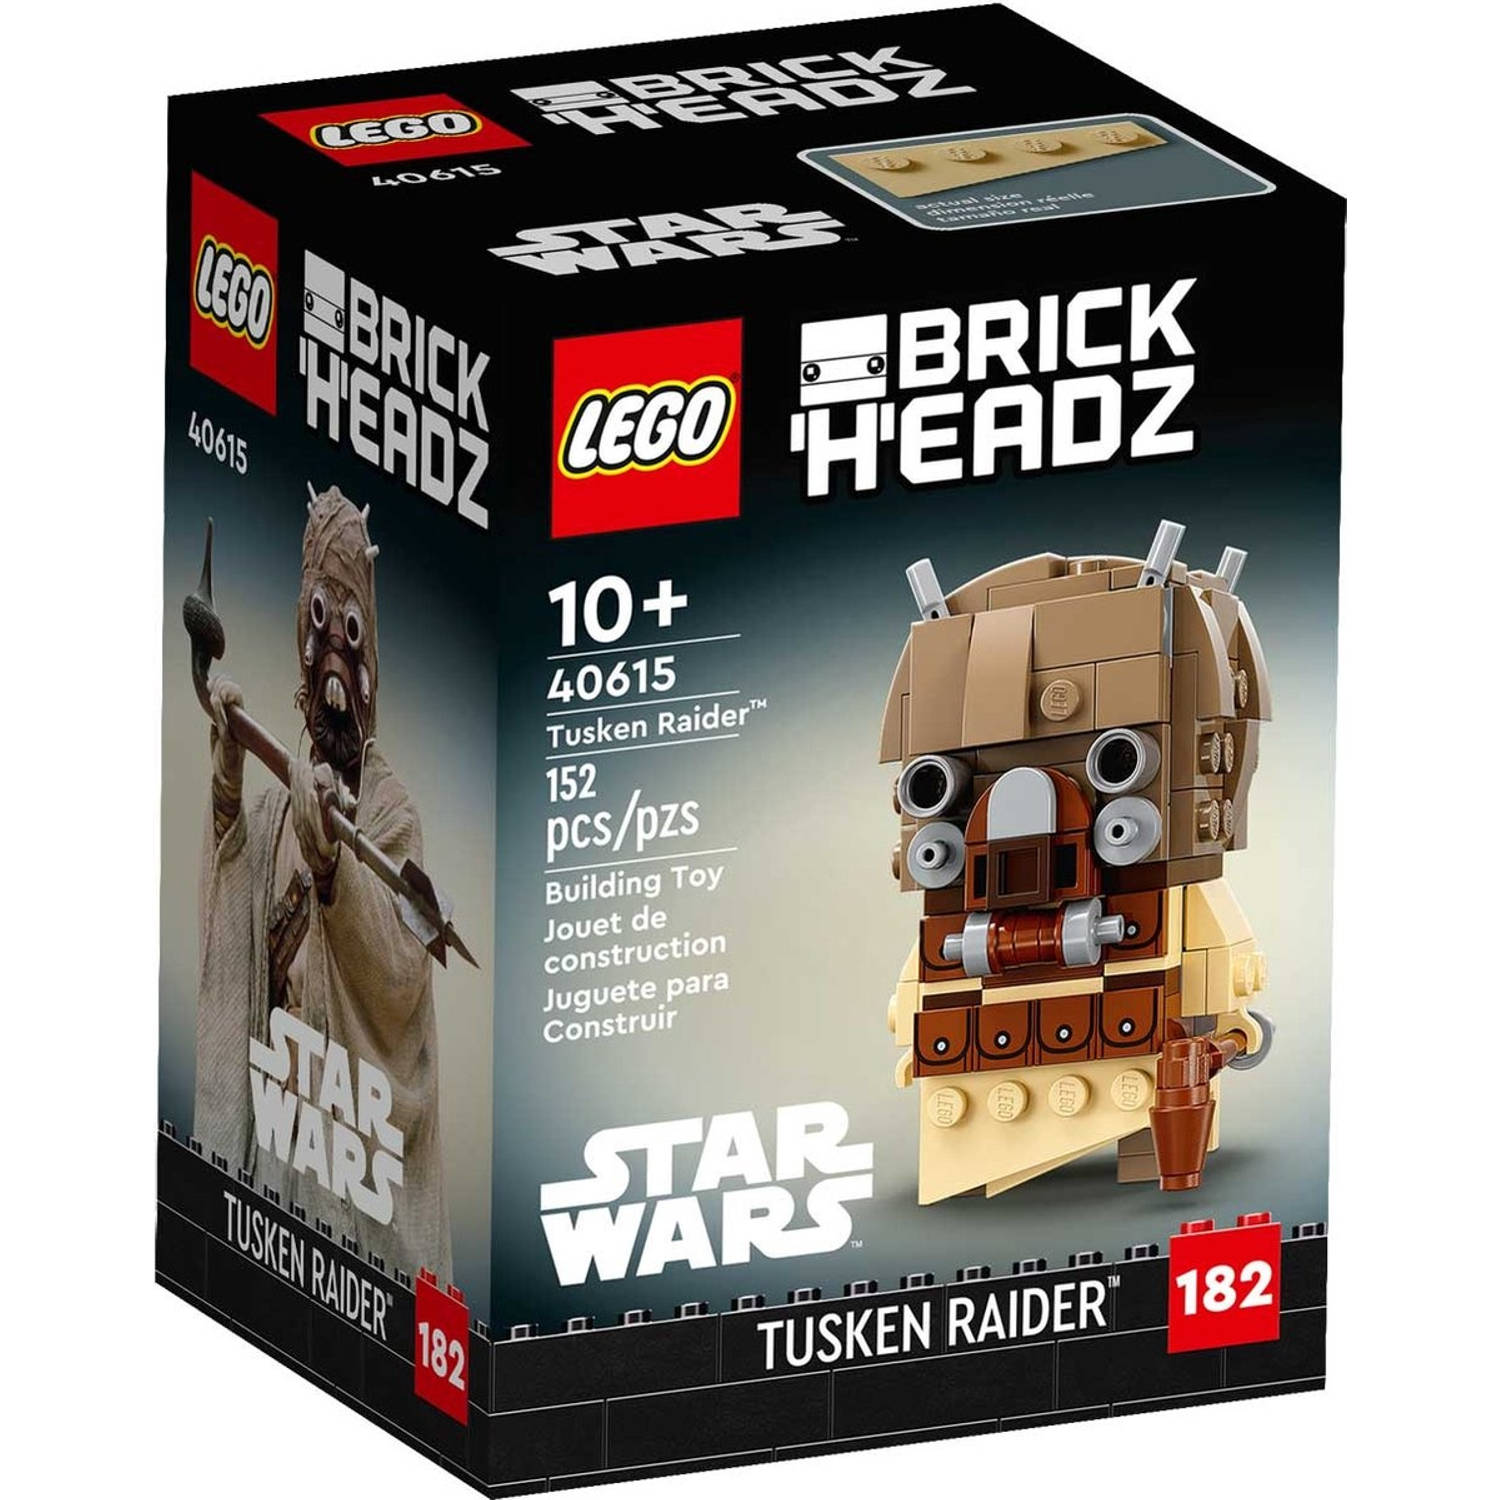 LEGO Brickheadz Star Wars Tusken Raider